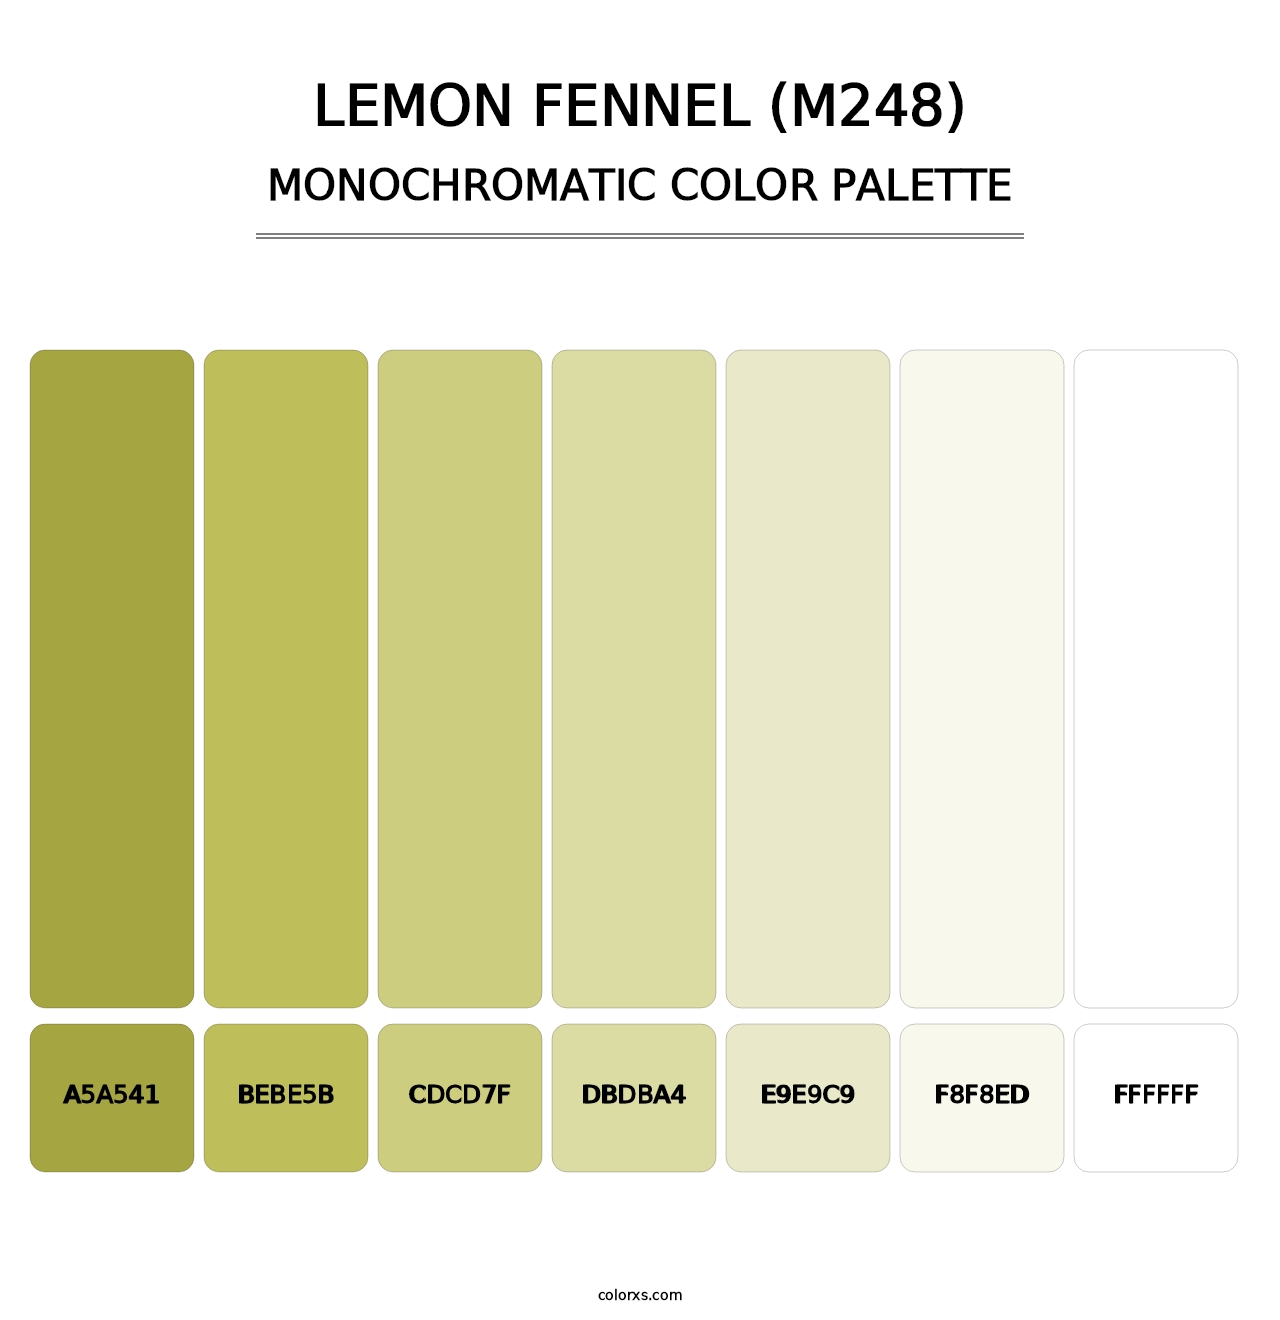 Lemon Fennel (M248) - Monochromatic Color Palette